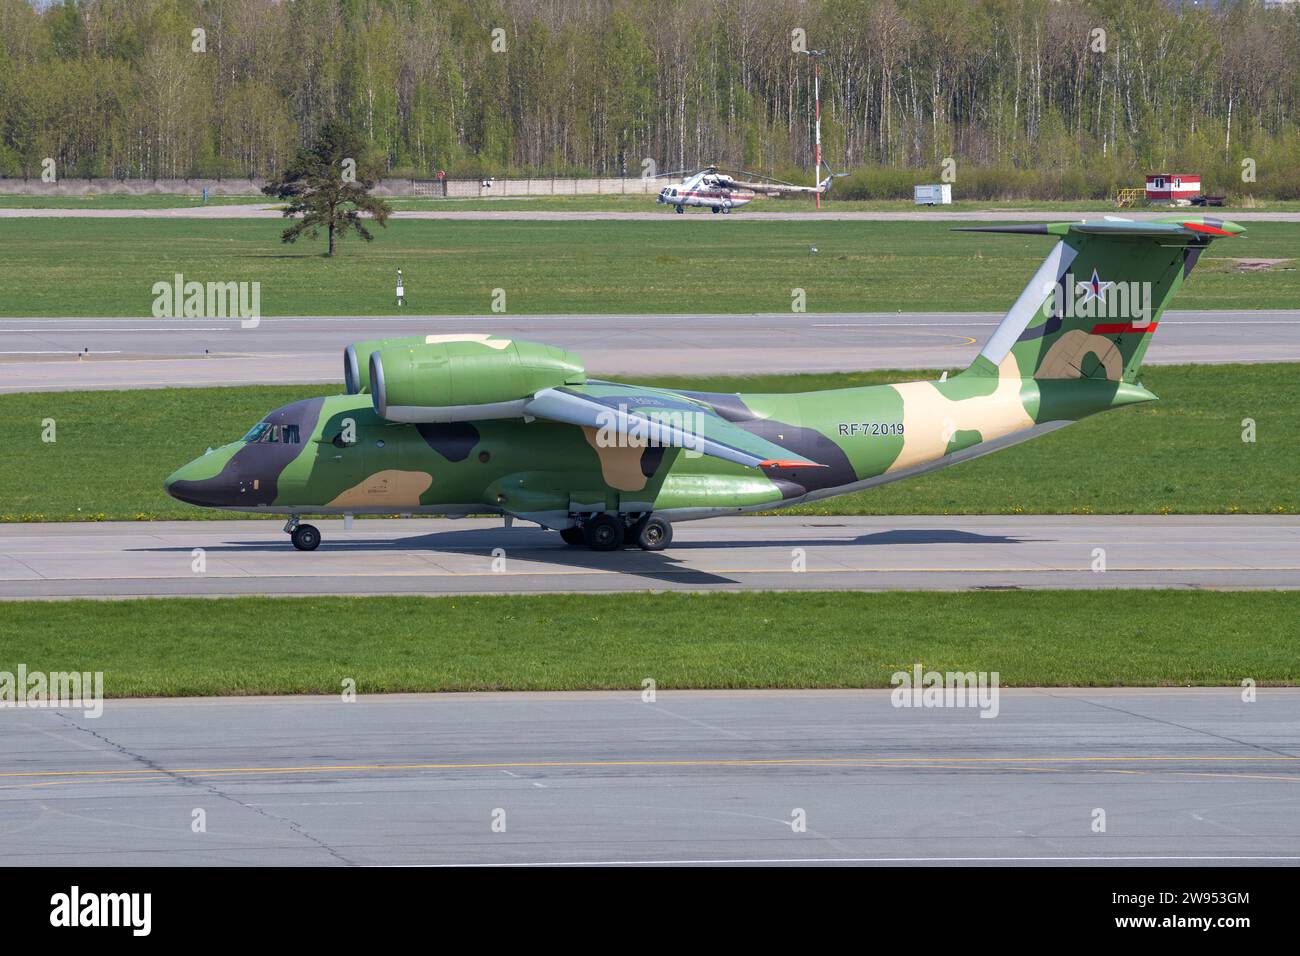 SAINT-PÉTERSBOURG, RUSSIE - 20 MAI 2022 : avion de transport militaire russe an-72P (RF -72019) sur la voie de circulation par une journée ensoleillée de mai. Aéroport de Pulkovo Banque D'Images